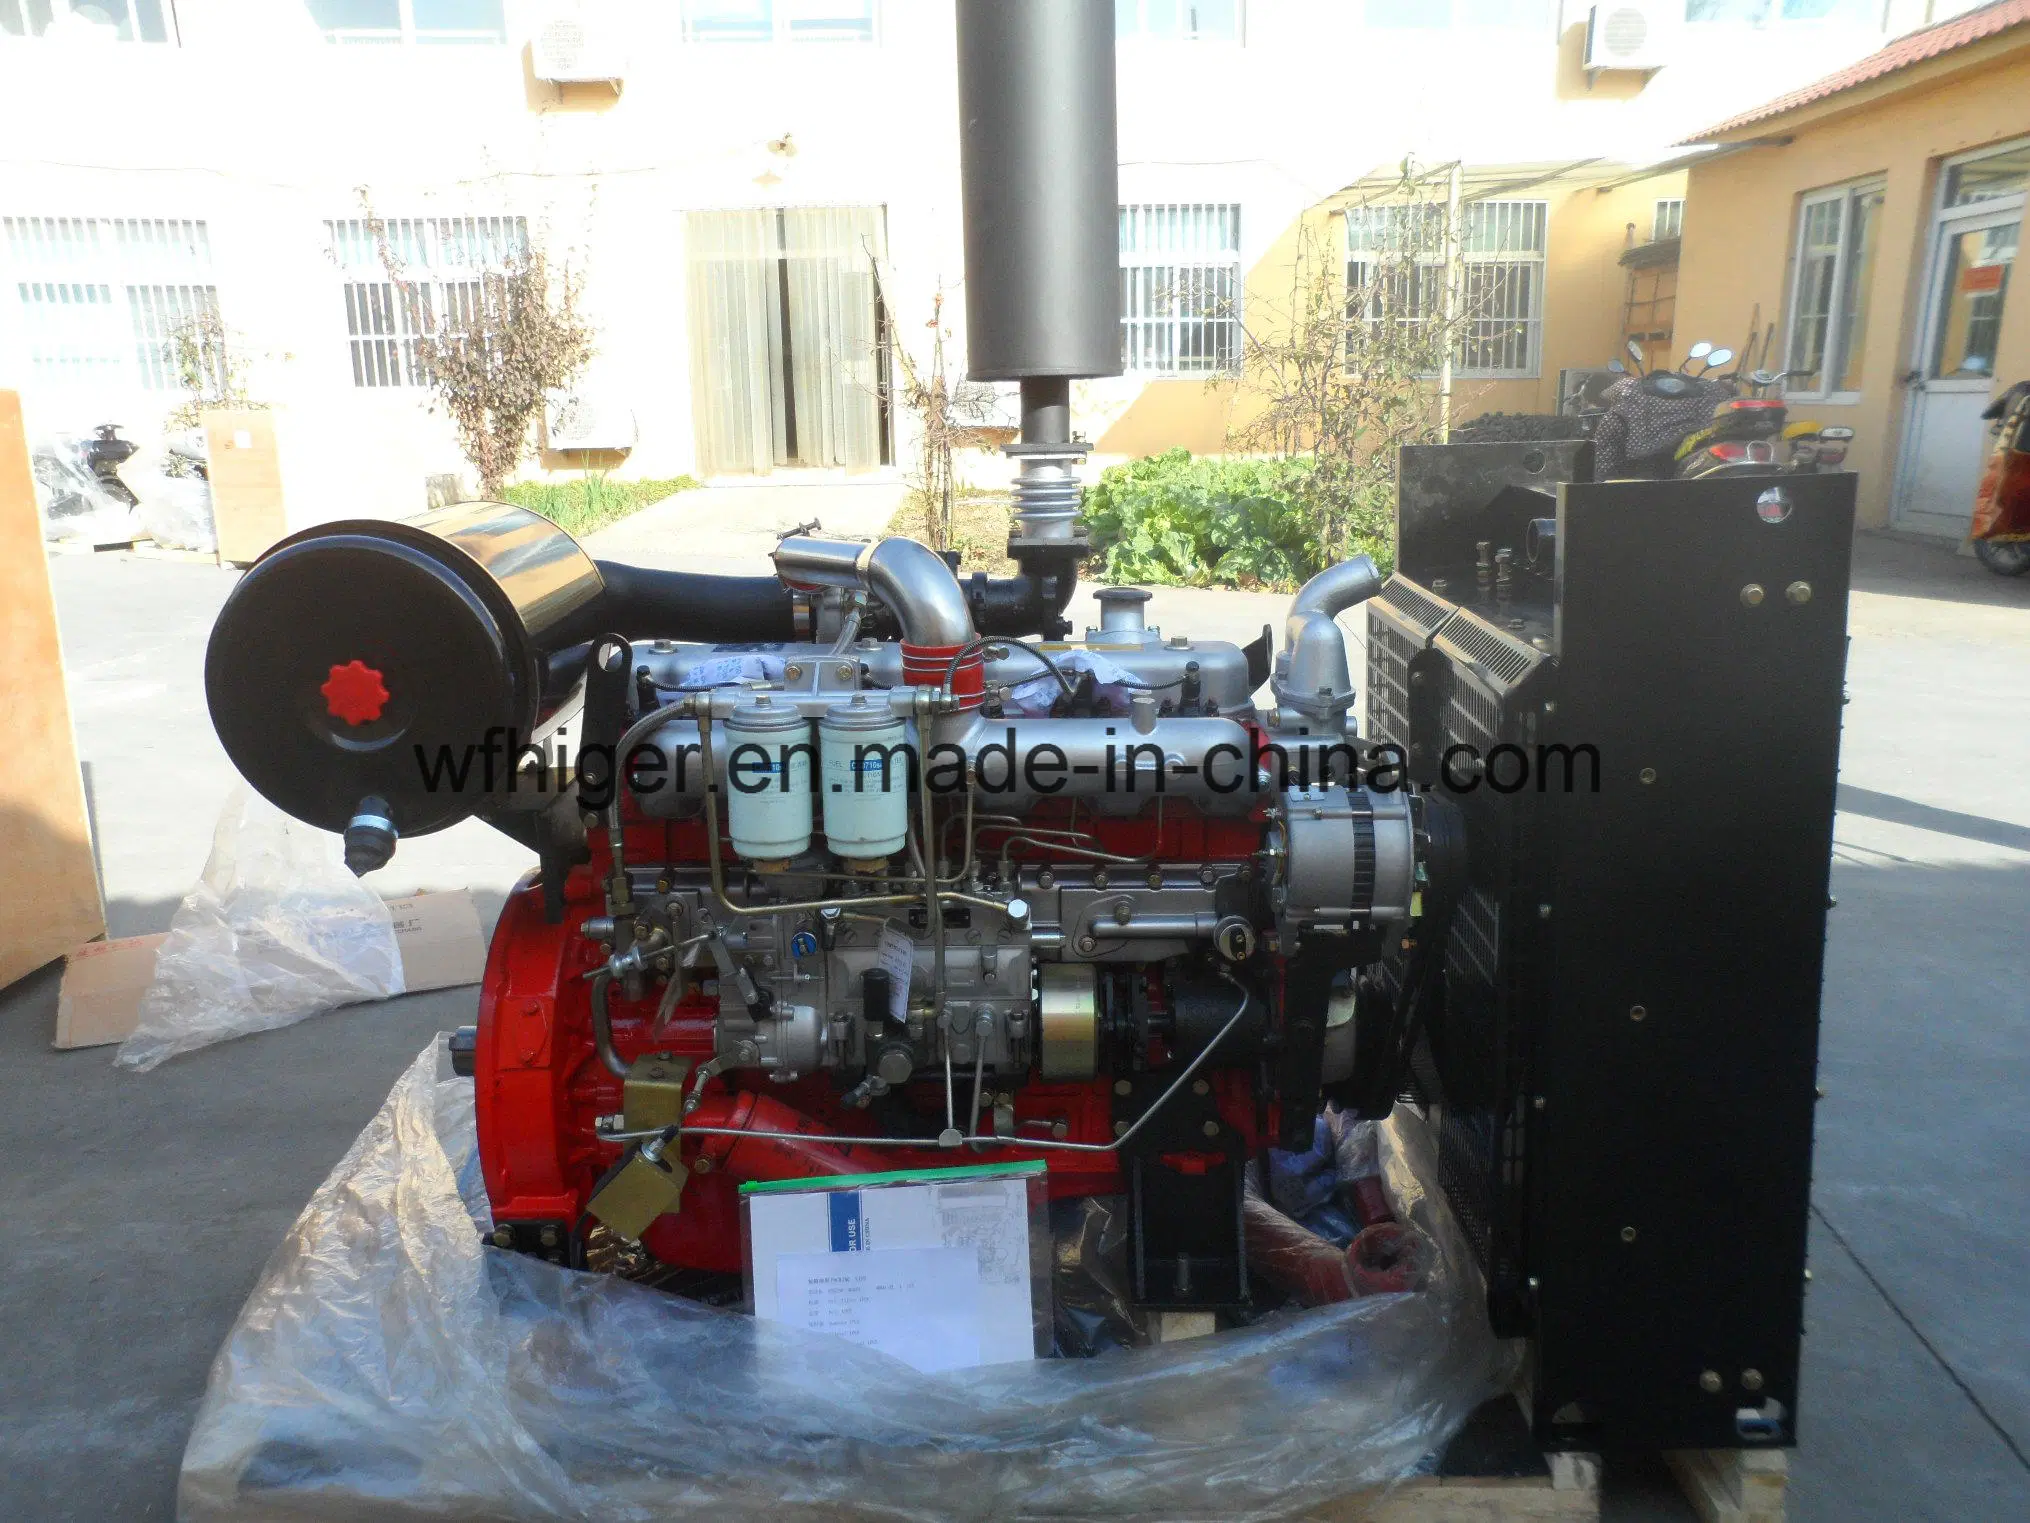 Isuzu-Technologie Dieselmotor für Generator/Wasserpumpe/Sprinklerpumpe 4ja1, 4jb1, 4bd, 6bd, 6tw